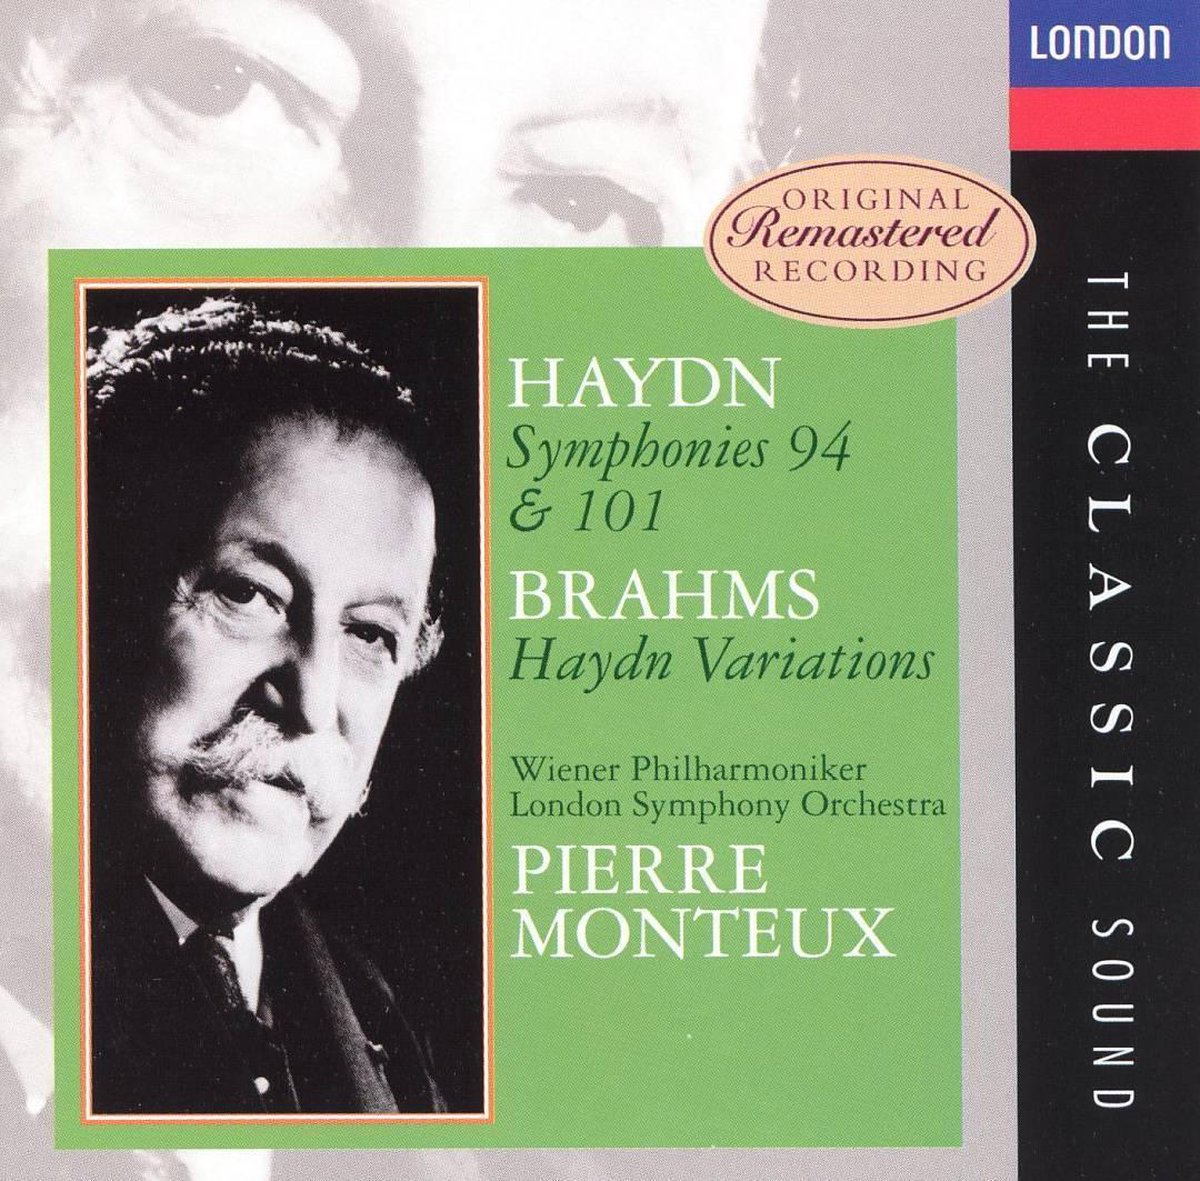 Haydn: Symphonies Nos. 94 & 101; Brahms: Haydn Variations - Pierre Monteux